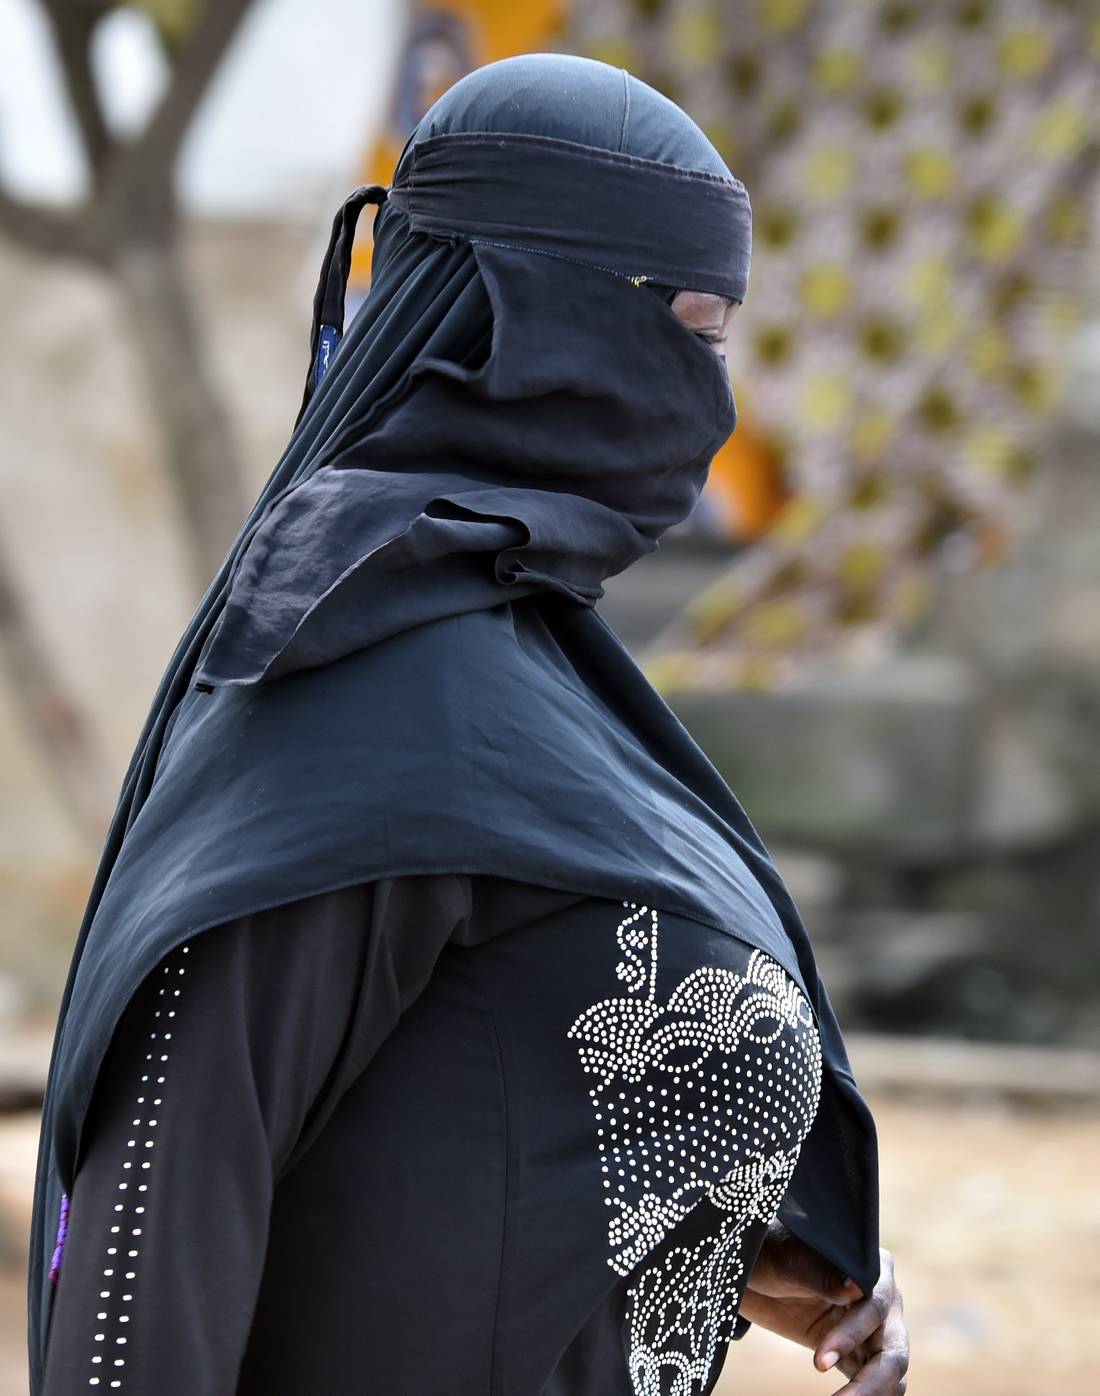 إلقاء القبض على "أم الزهراء".. الفرنسية التي تزوّج مقاتلي "داعش" من أوروبيات